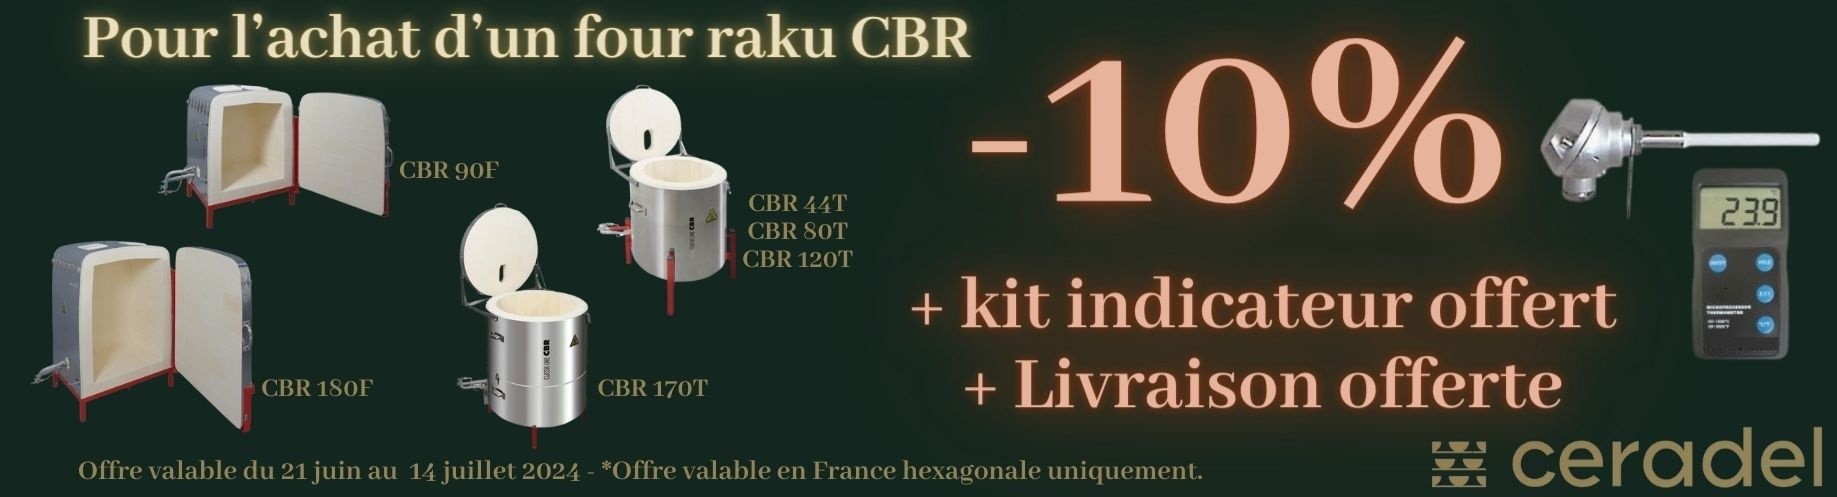 -10% + kit indicateur offert pour l'achat d'un four Raku CBR parmi une sélection